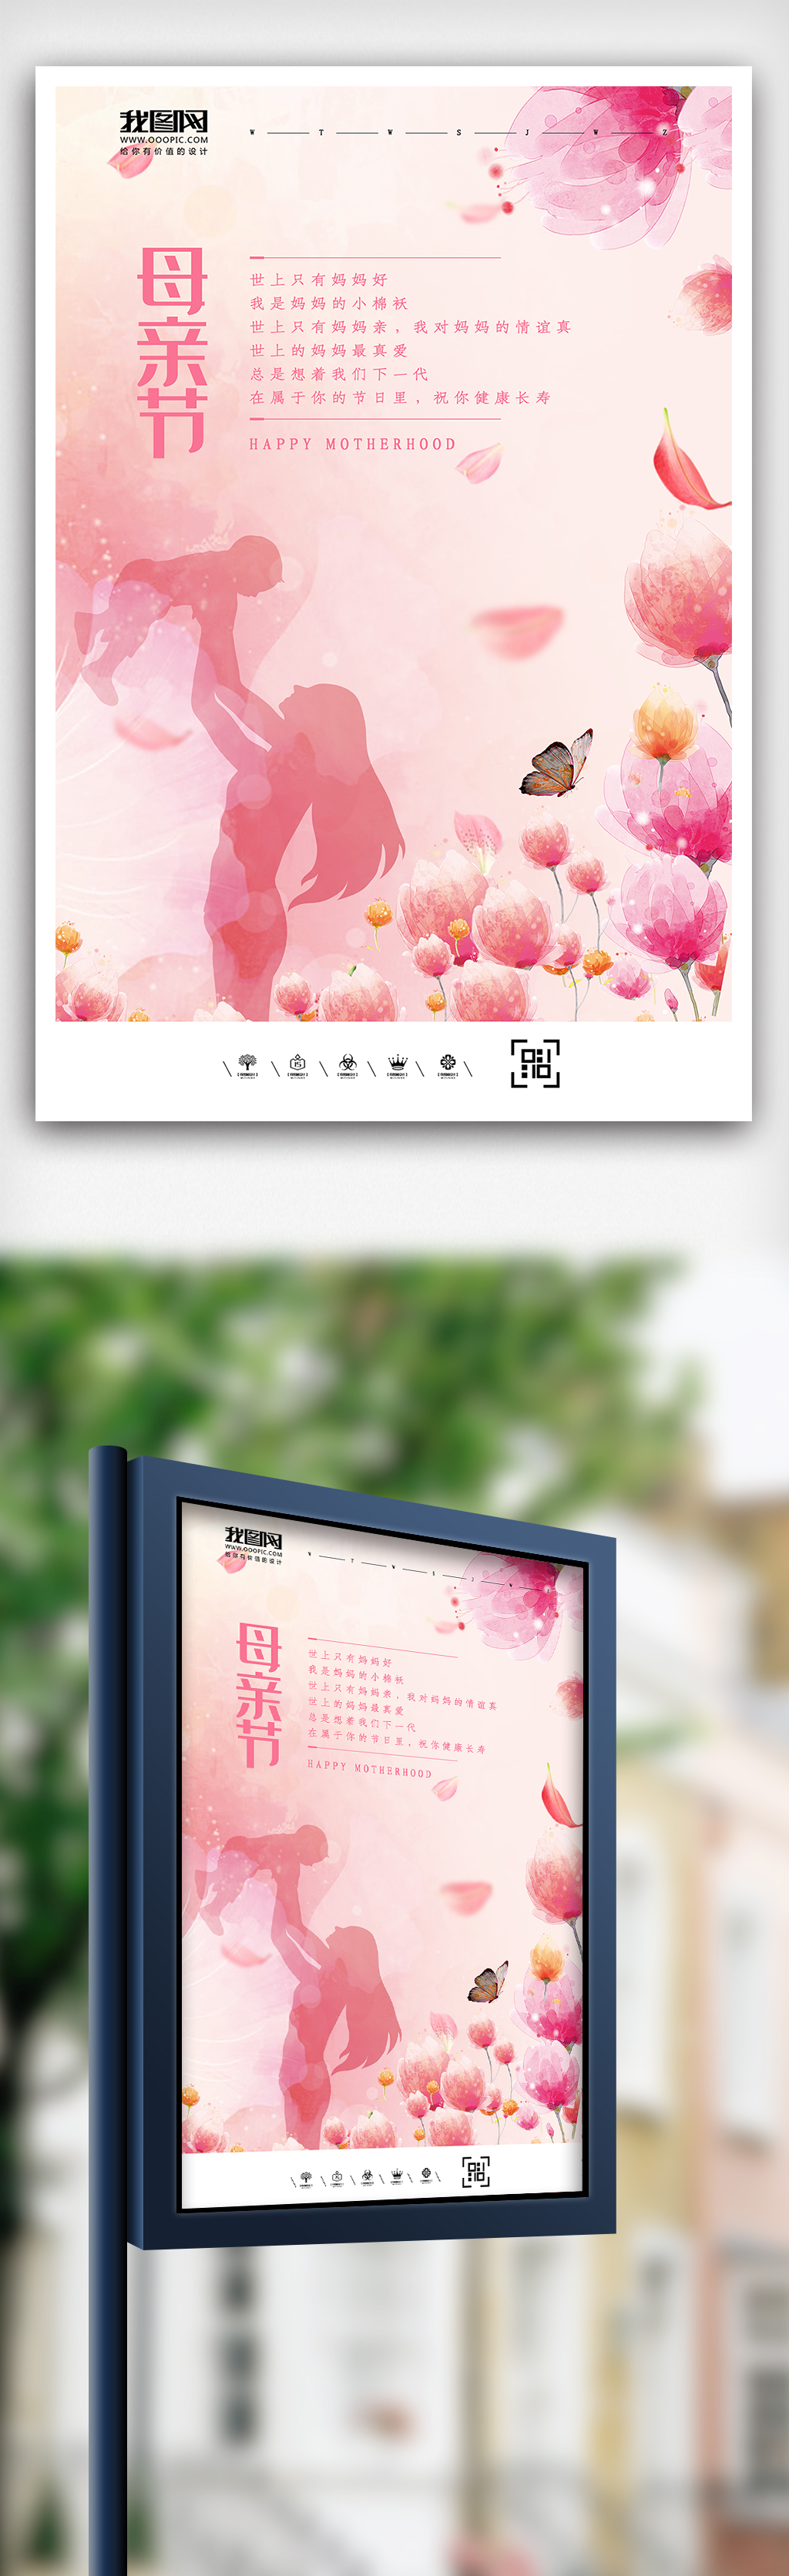 2019粉色水彩风格母亲节海报设计图片